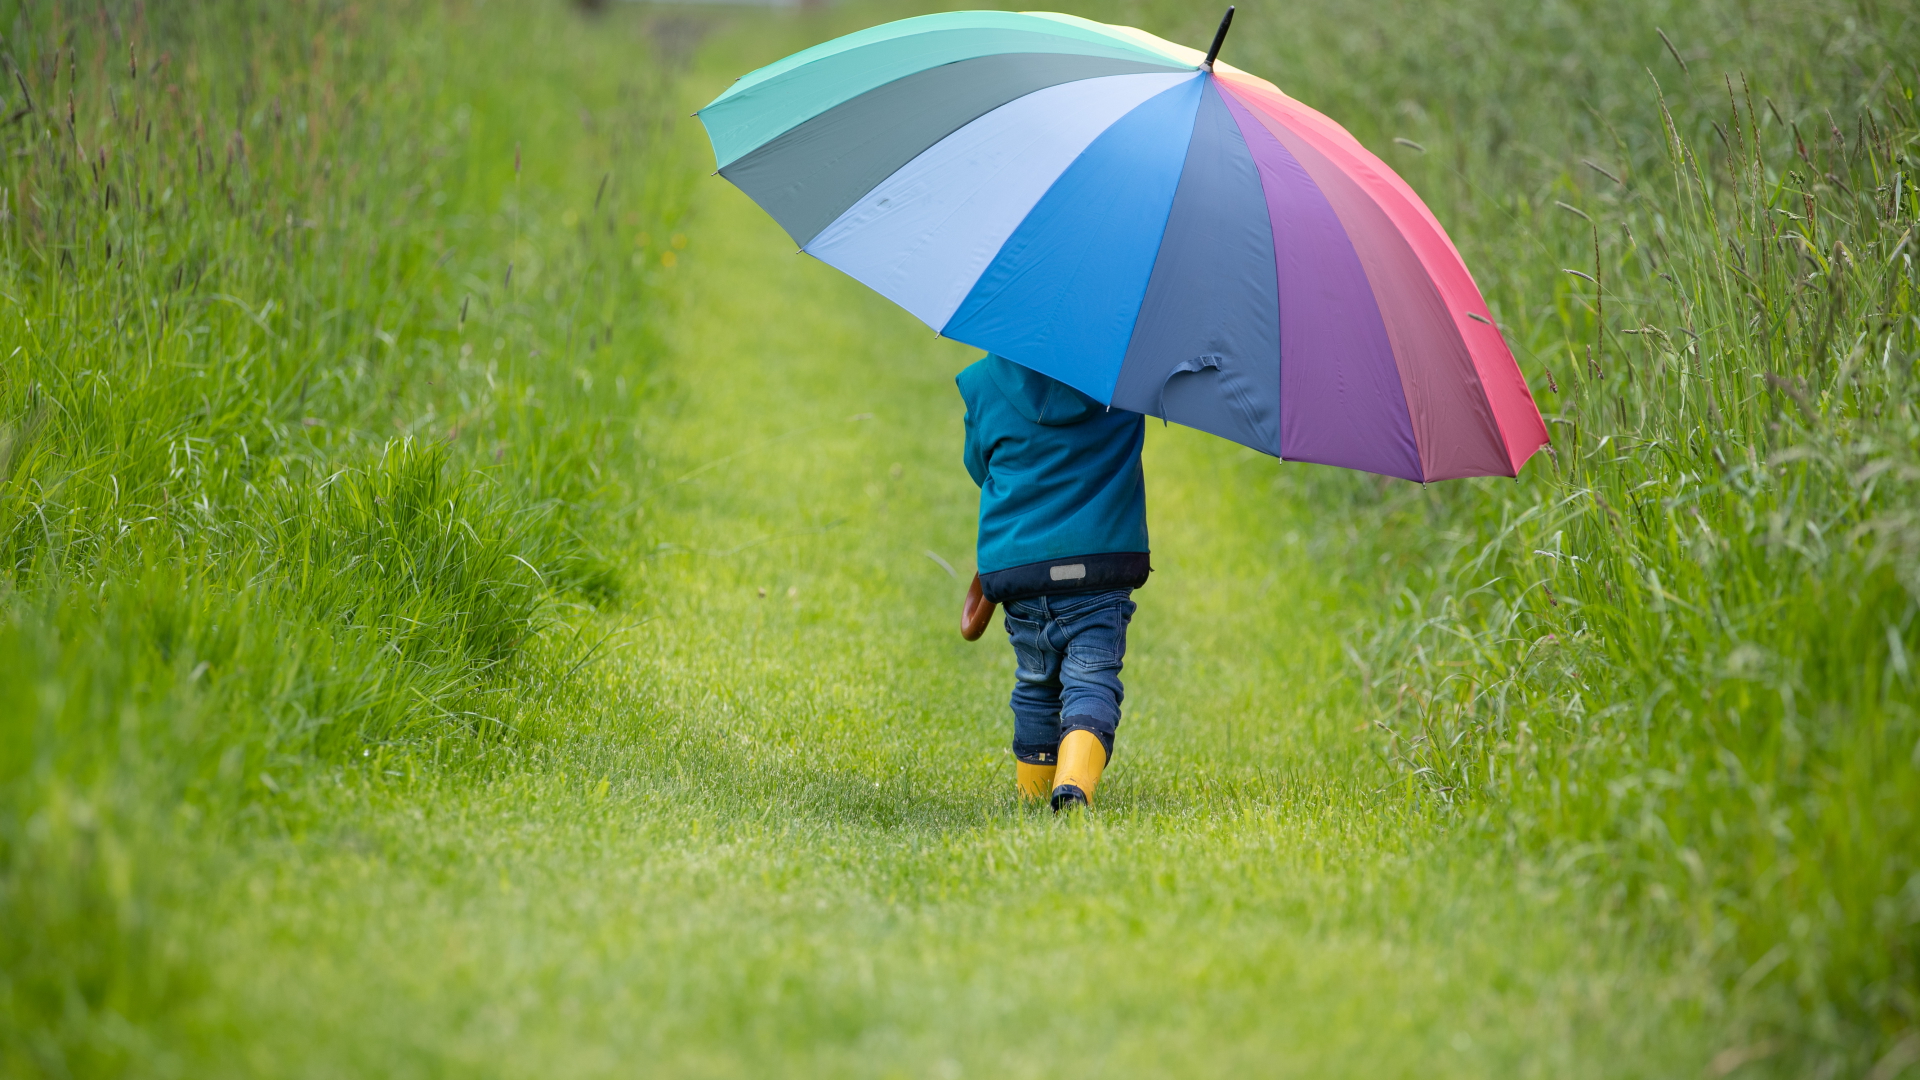 Ein Kind geht mit einem riesigen regebogenfarbenen Schirm einen Feldweg entlang.